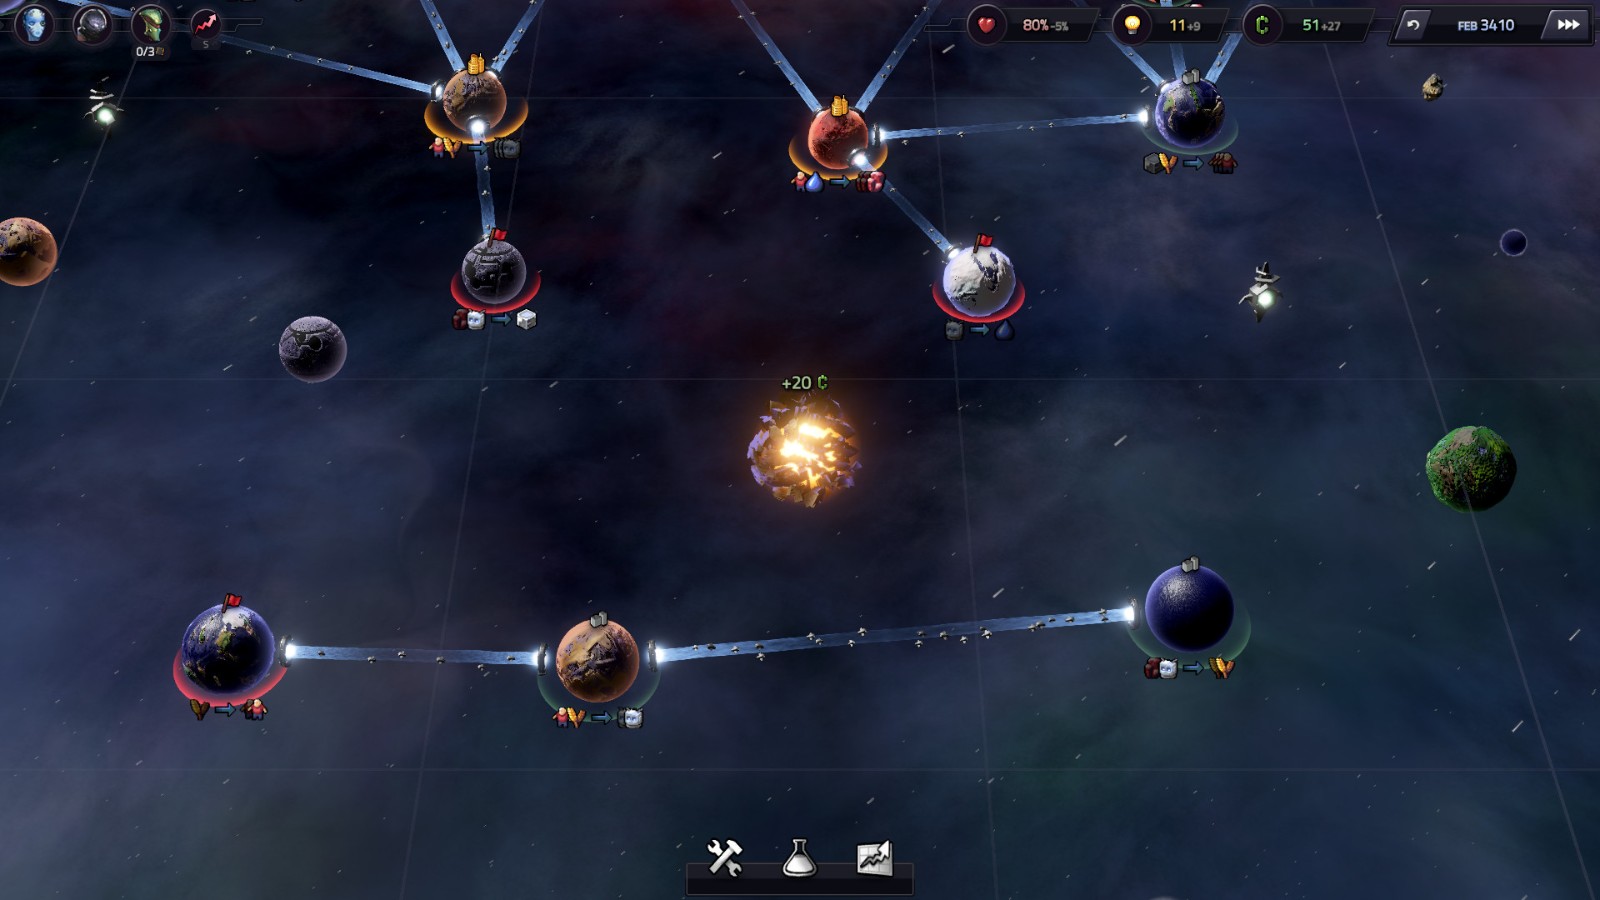 太空大战略游戏《Slipways》6月4日在Steam发售